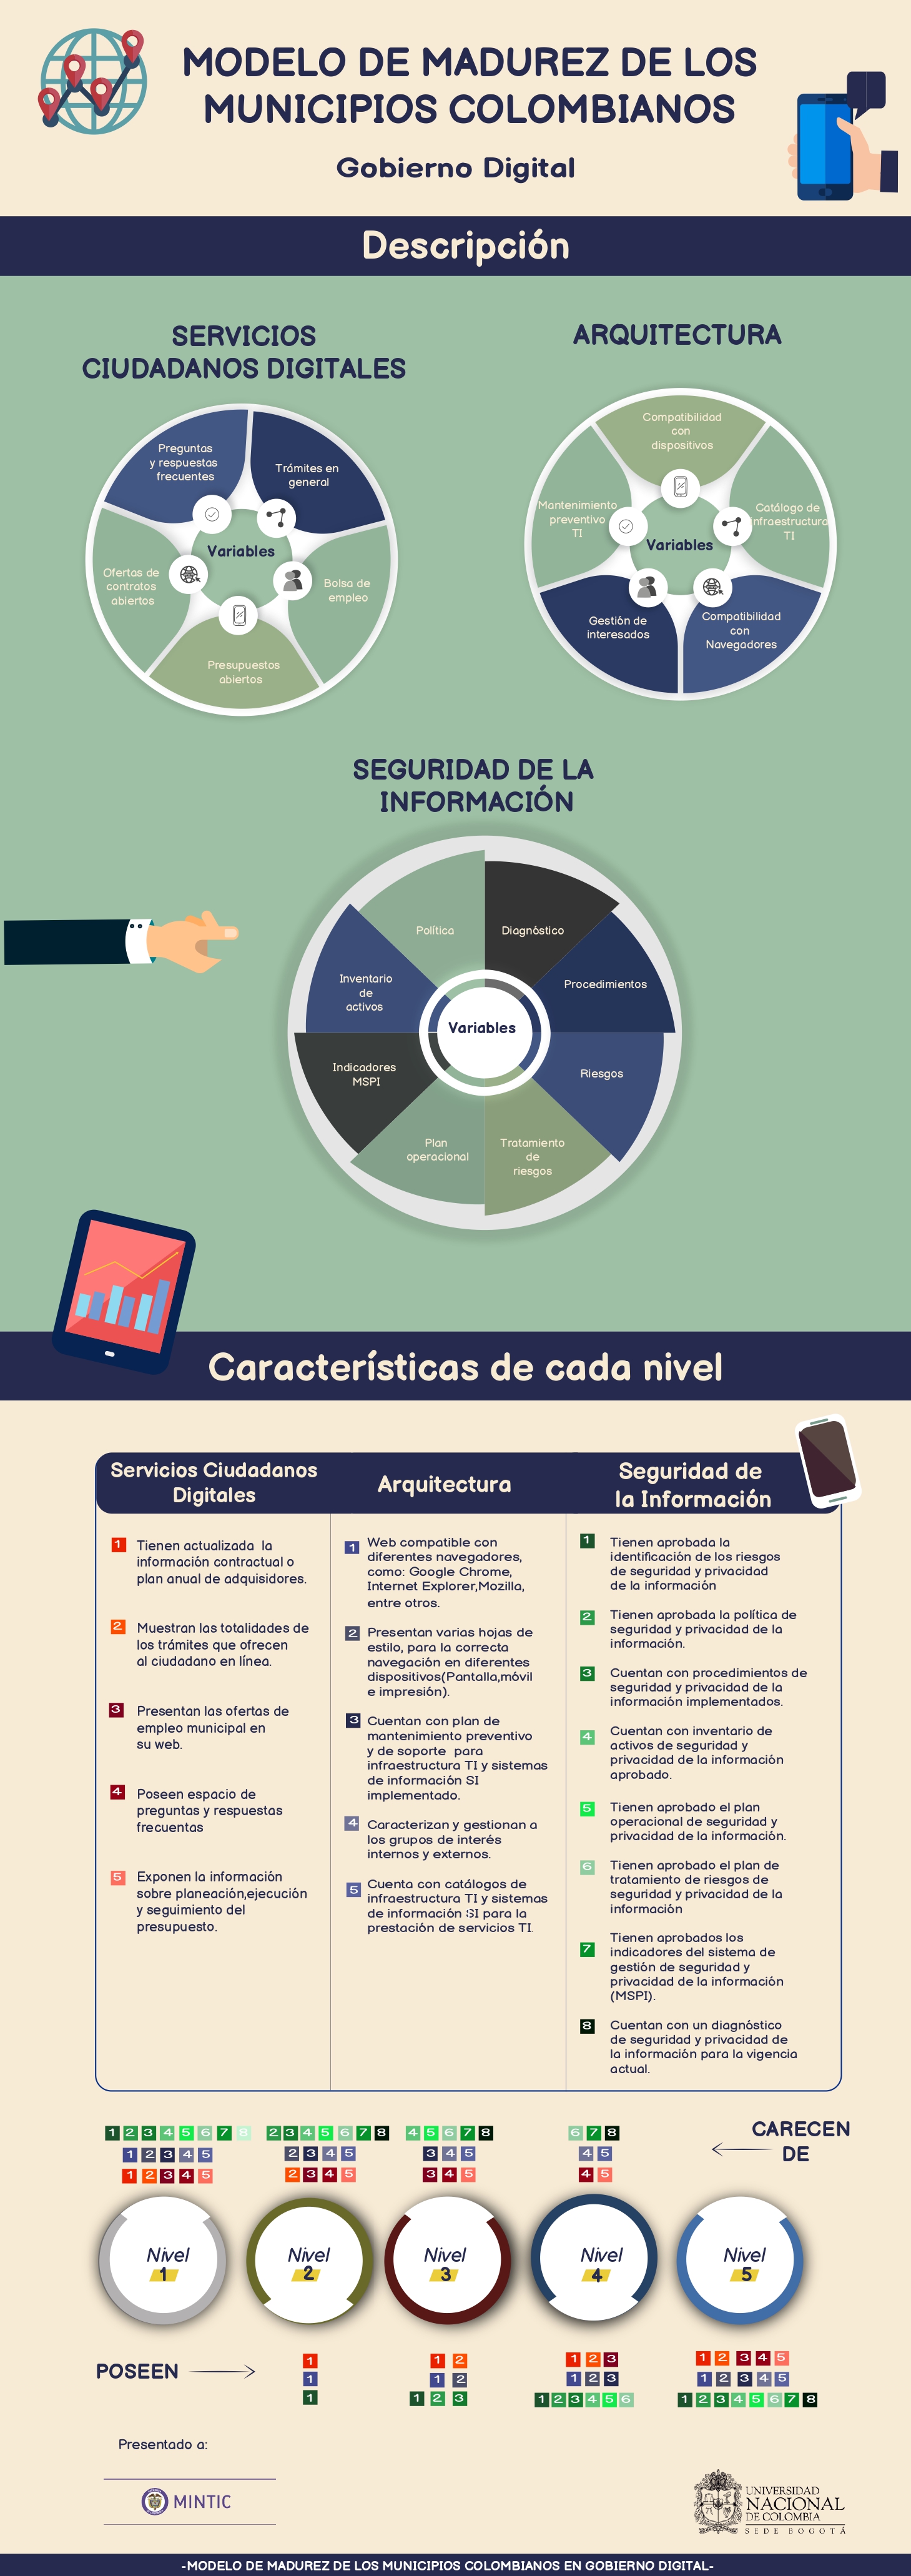 Infografía “Modelo de madurez de los municipios colombianos en gobierno digital”